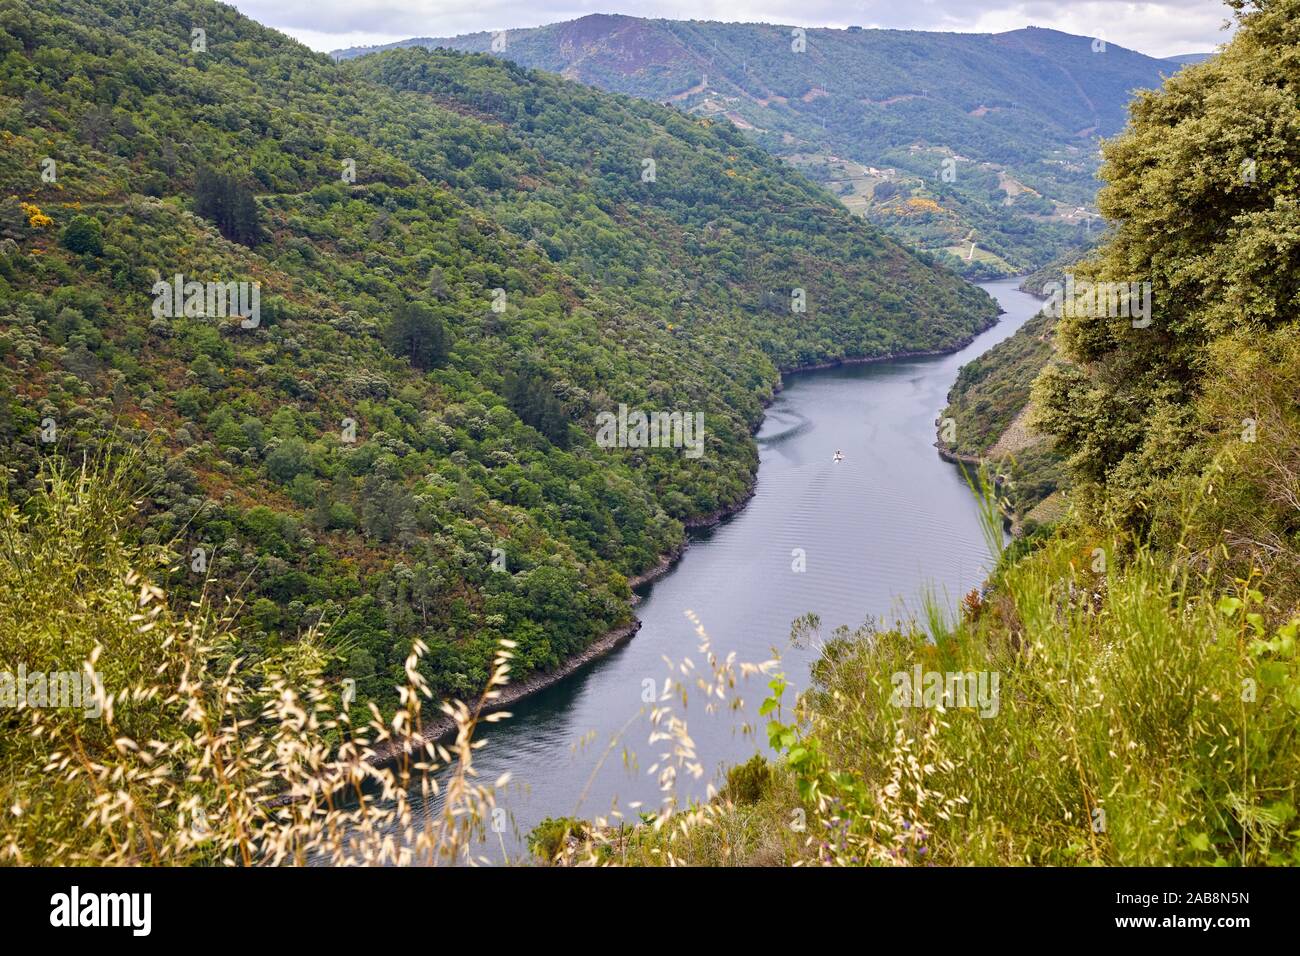 Ribeira Sacra, Heroic Viticulture, Sil river canyon, Doade, Sober, Lugo, Galicia, Spain Stock Photo